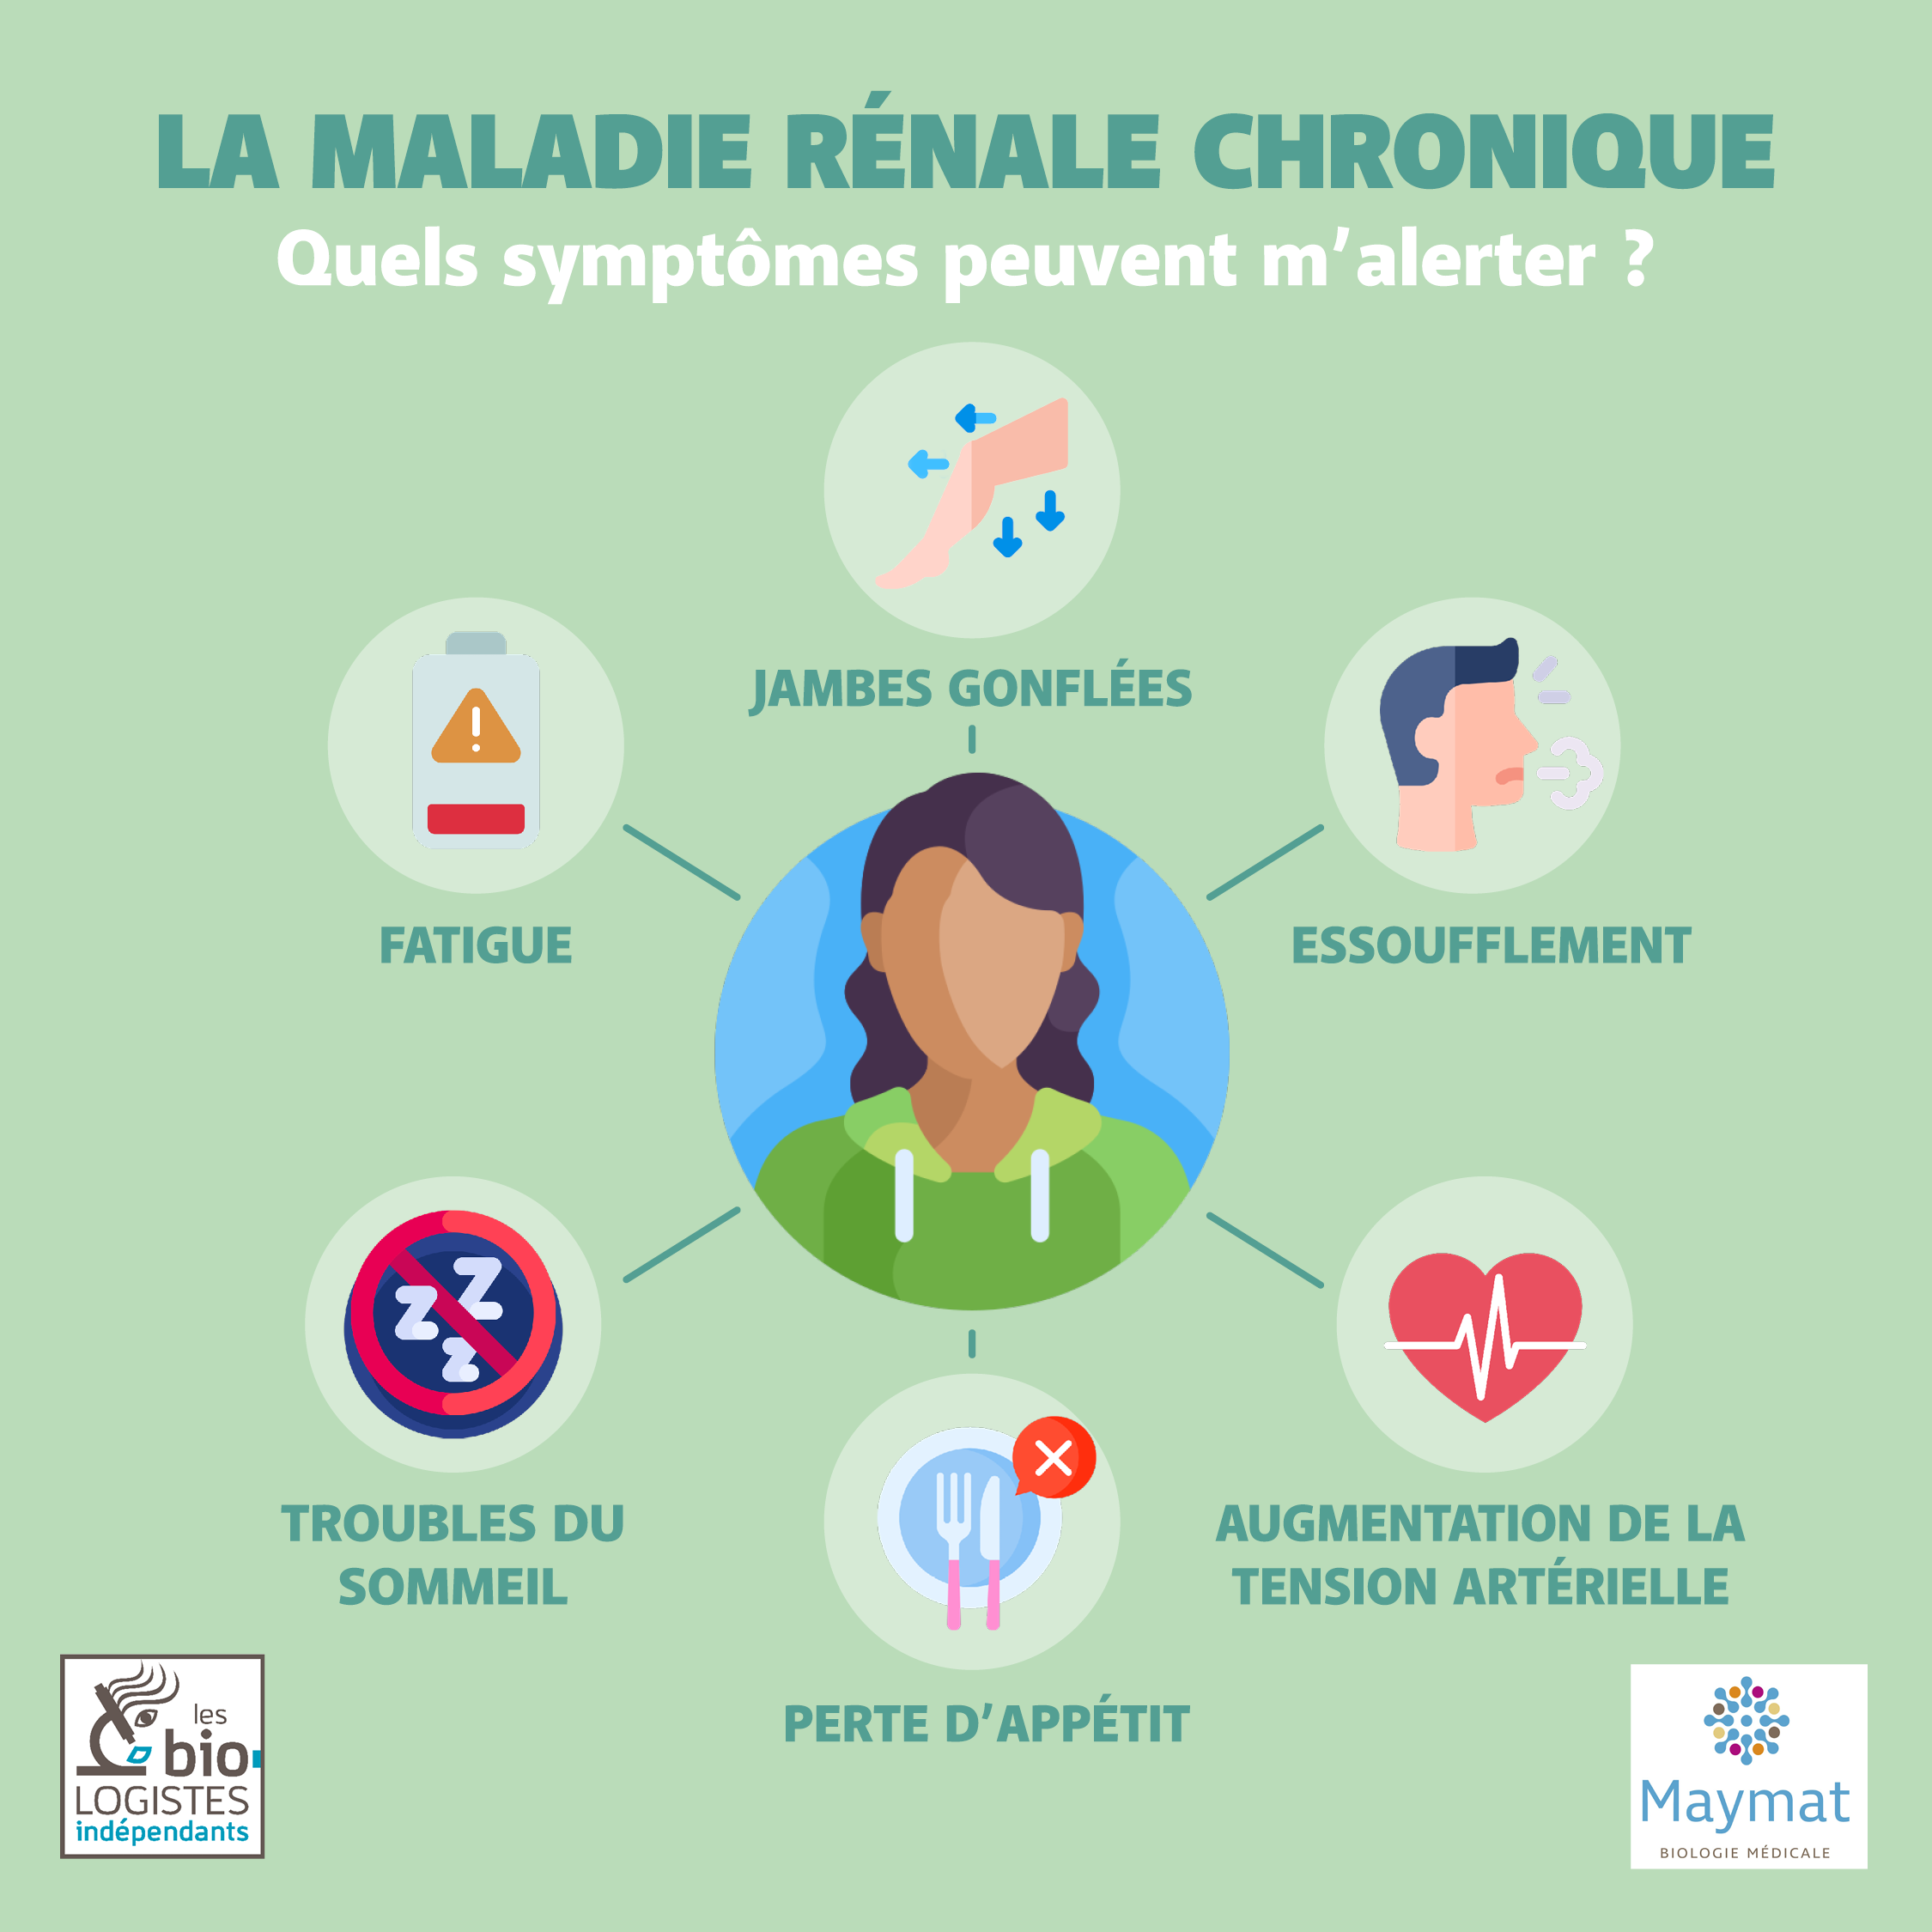 La maladie renale chronique: 1 français sur 10 est concerné